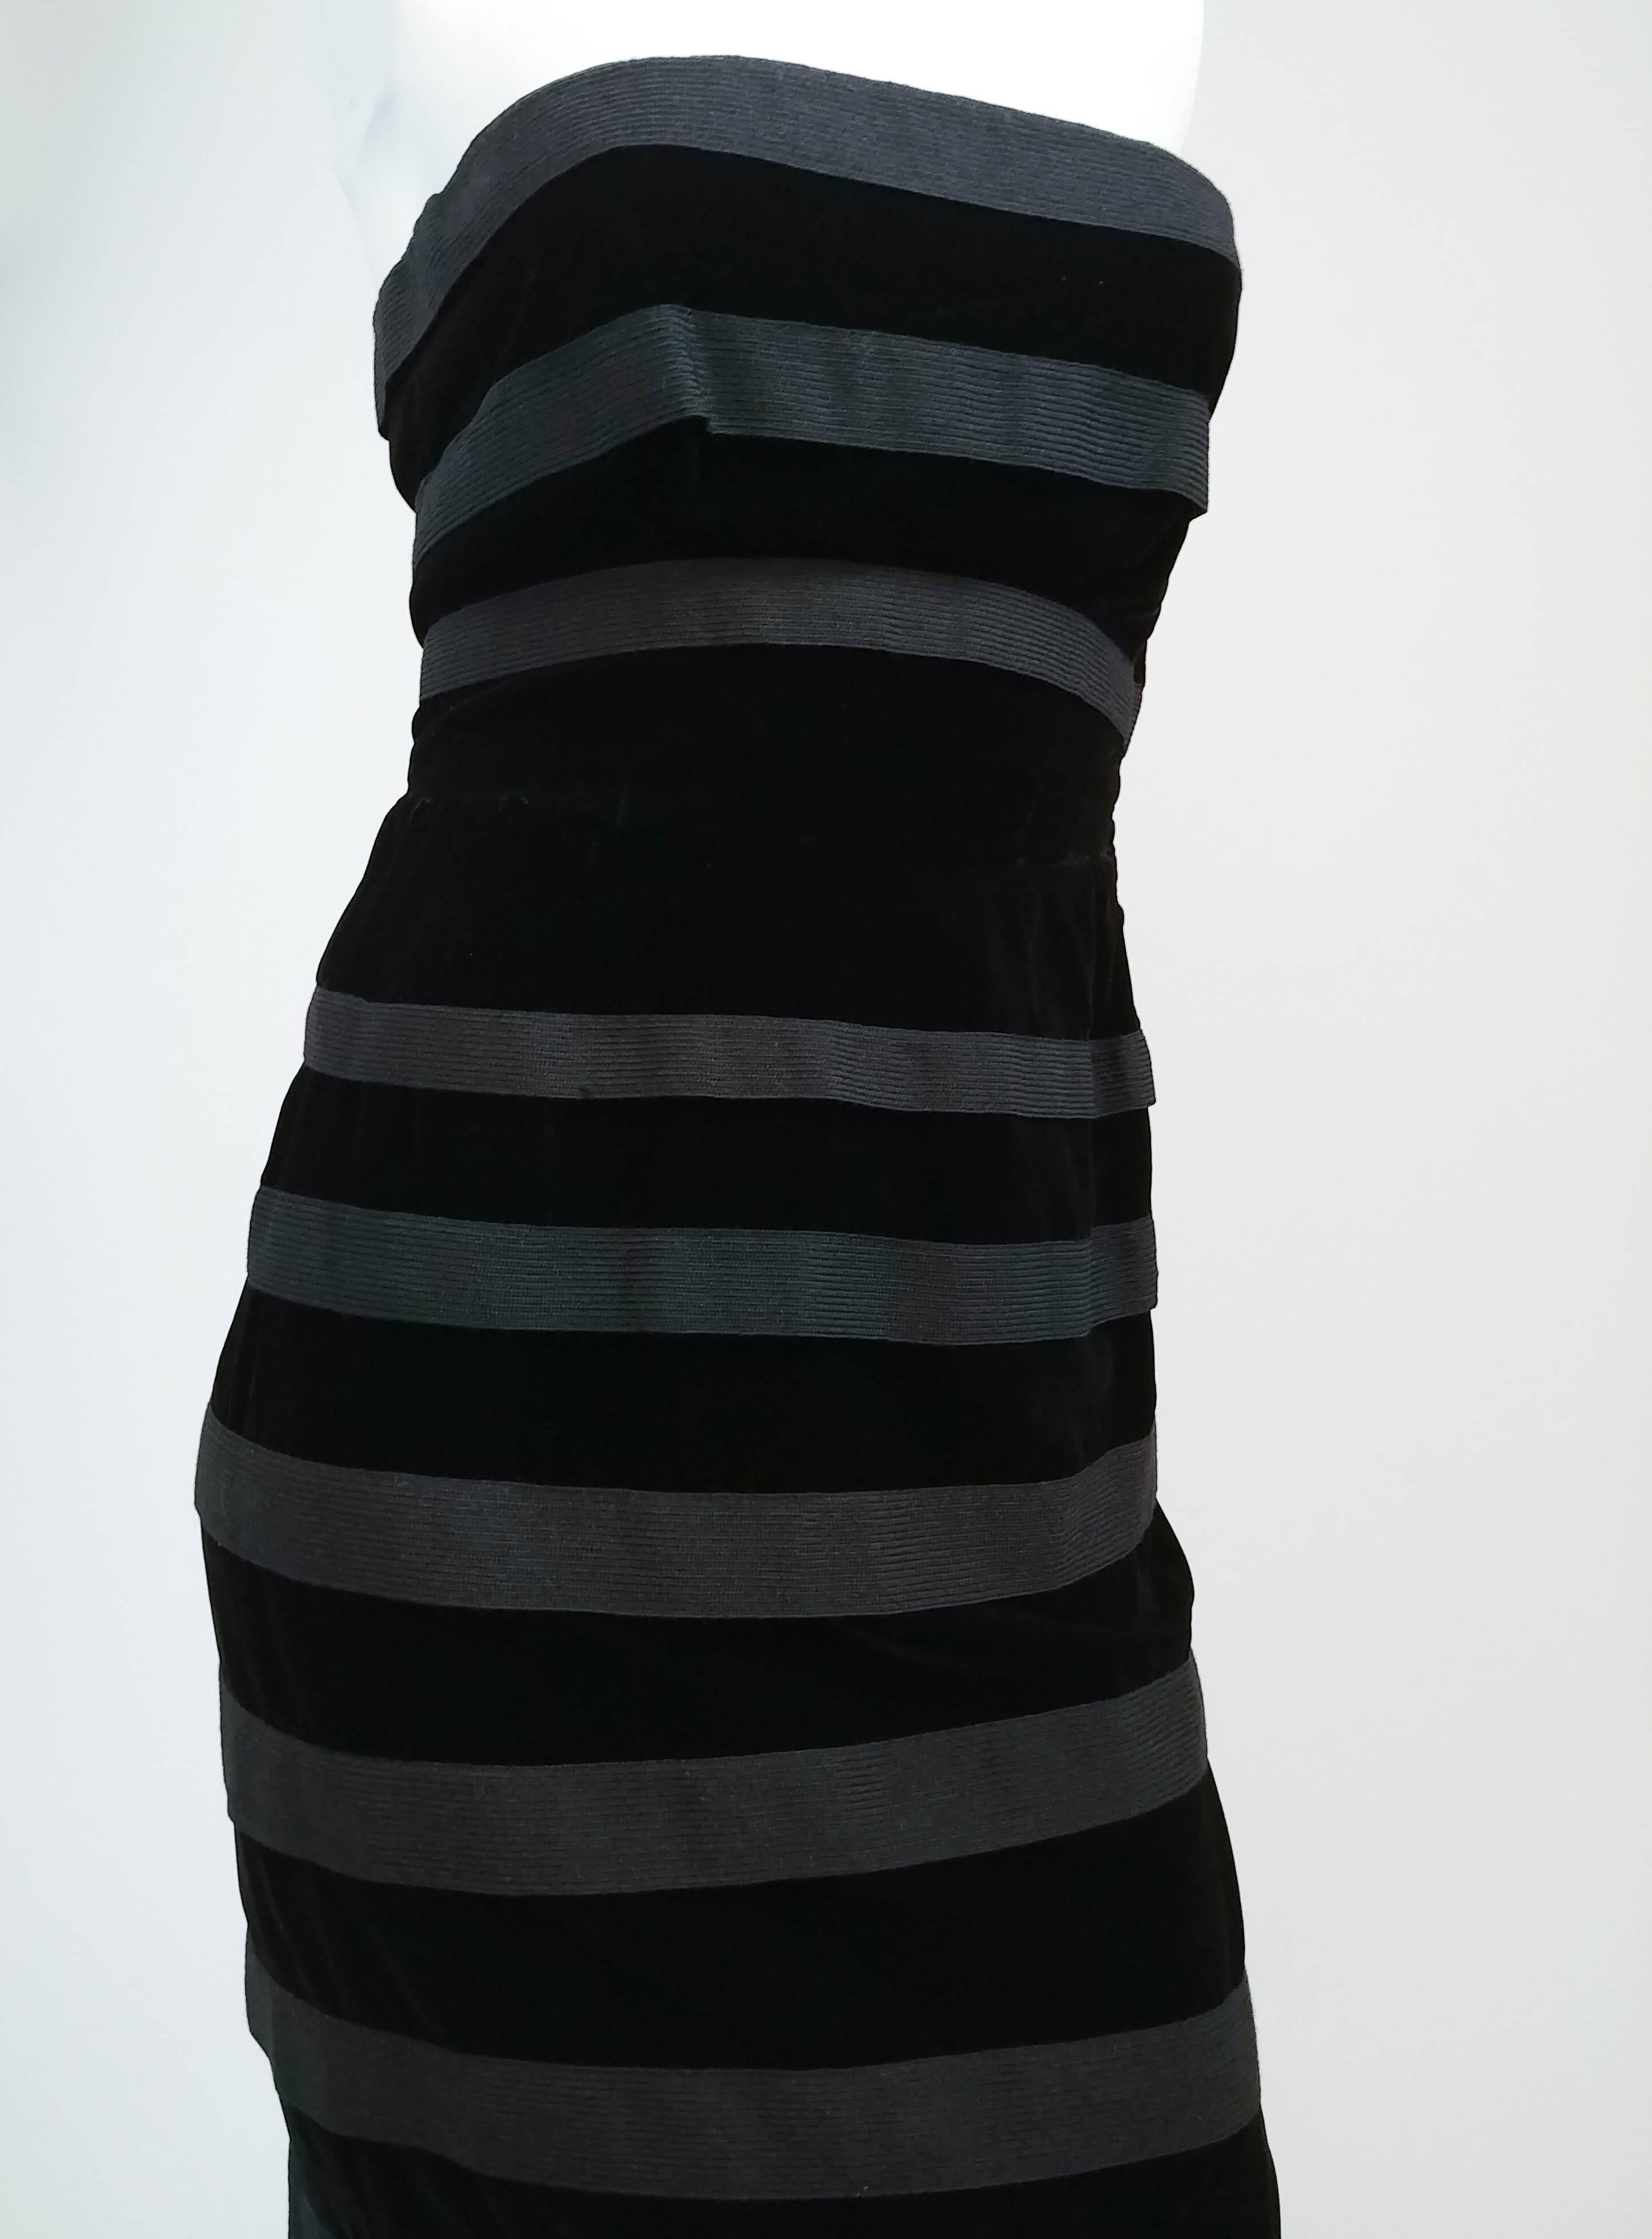 1950s Black Striped Velvet Strapless Cocktail Dress. Strapless velvet dress with crochet trim sewn on in striped pattern. 